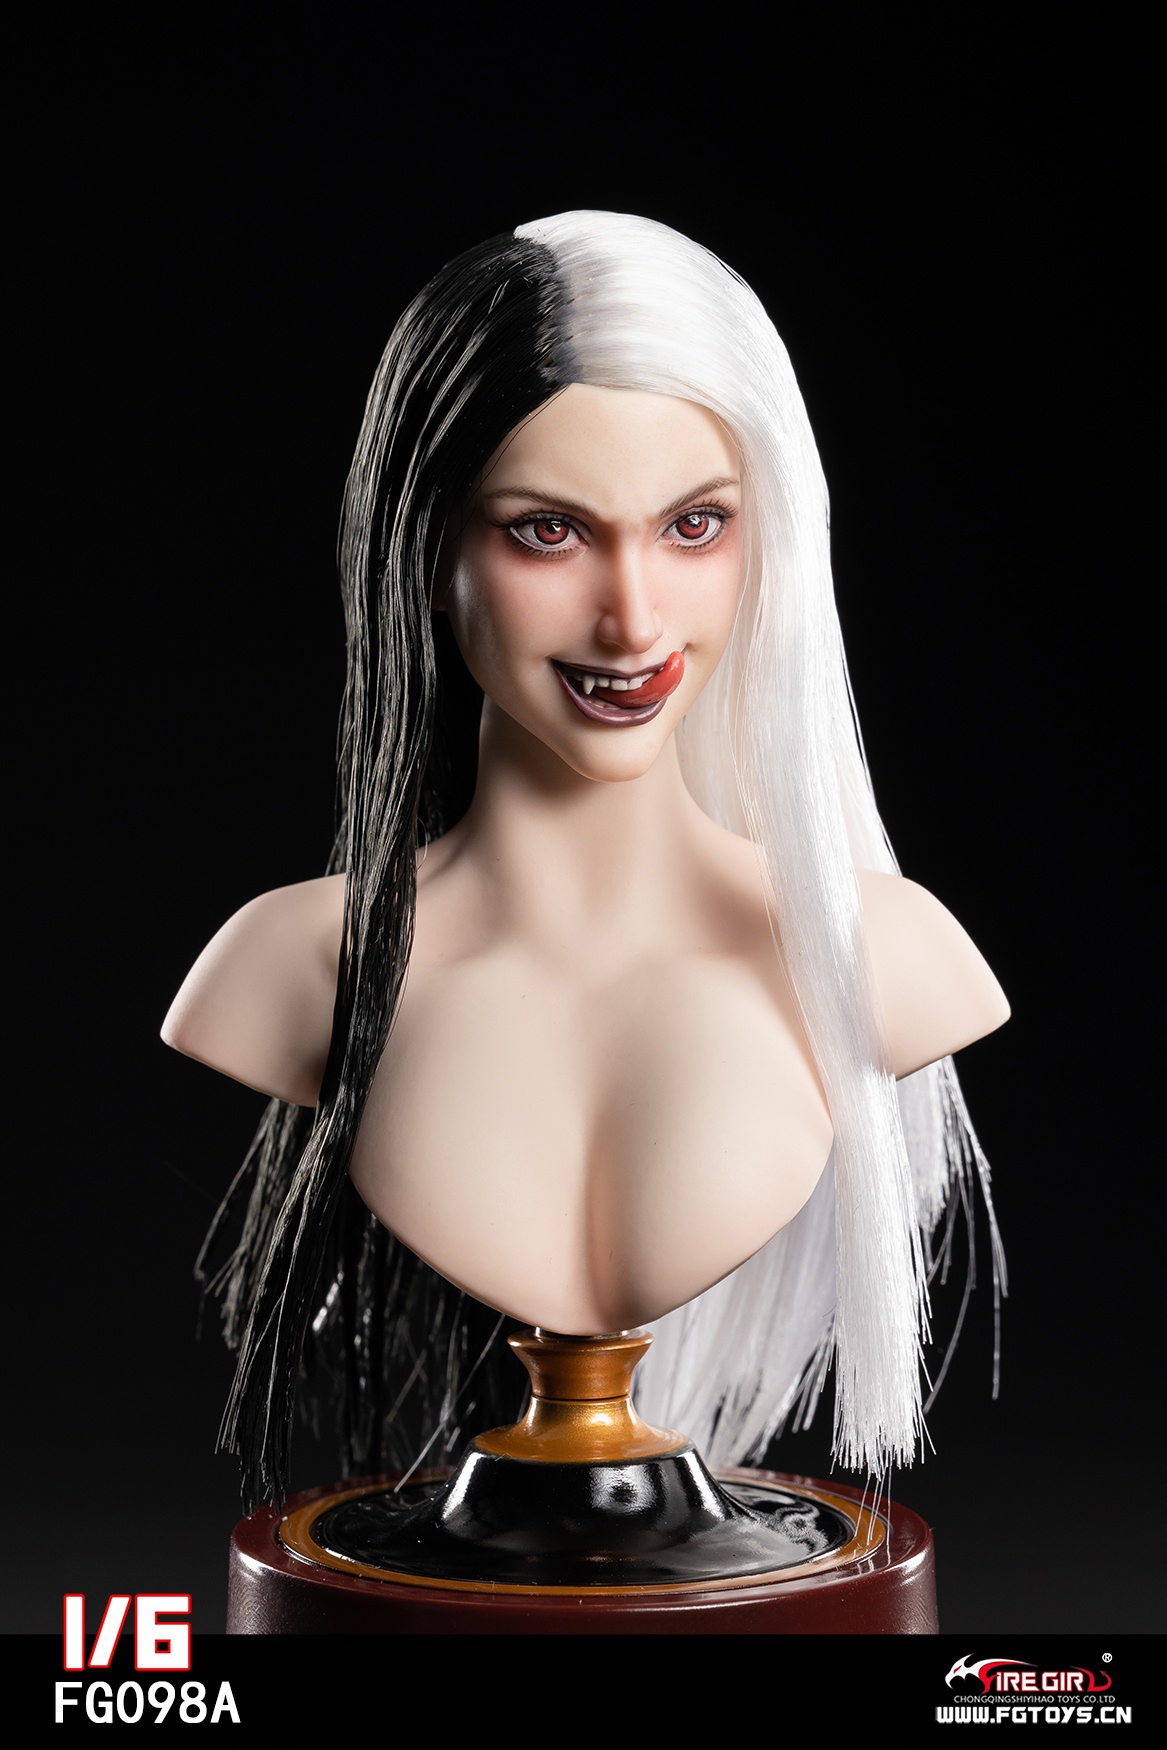 firegirl - NEW PRODUCT: Fire Girl Toys: Witch Head Sculpture (FG098A/FG098B) 0718